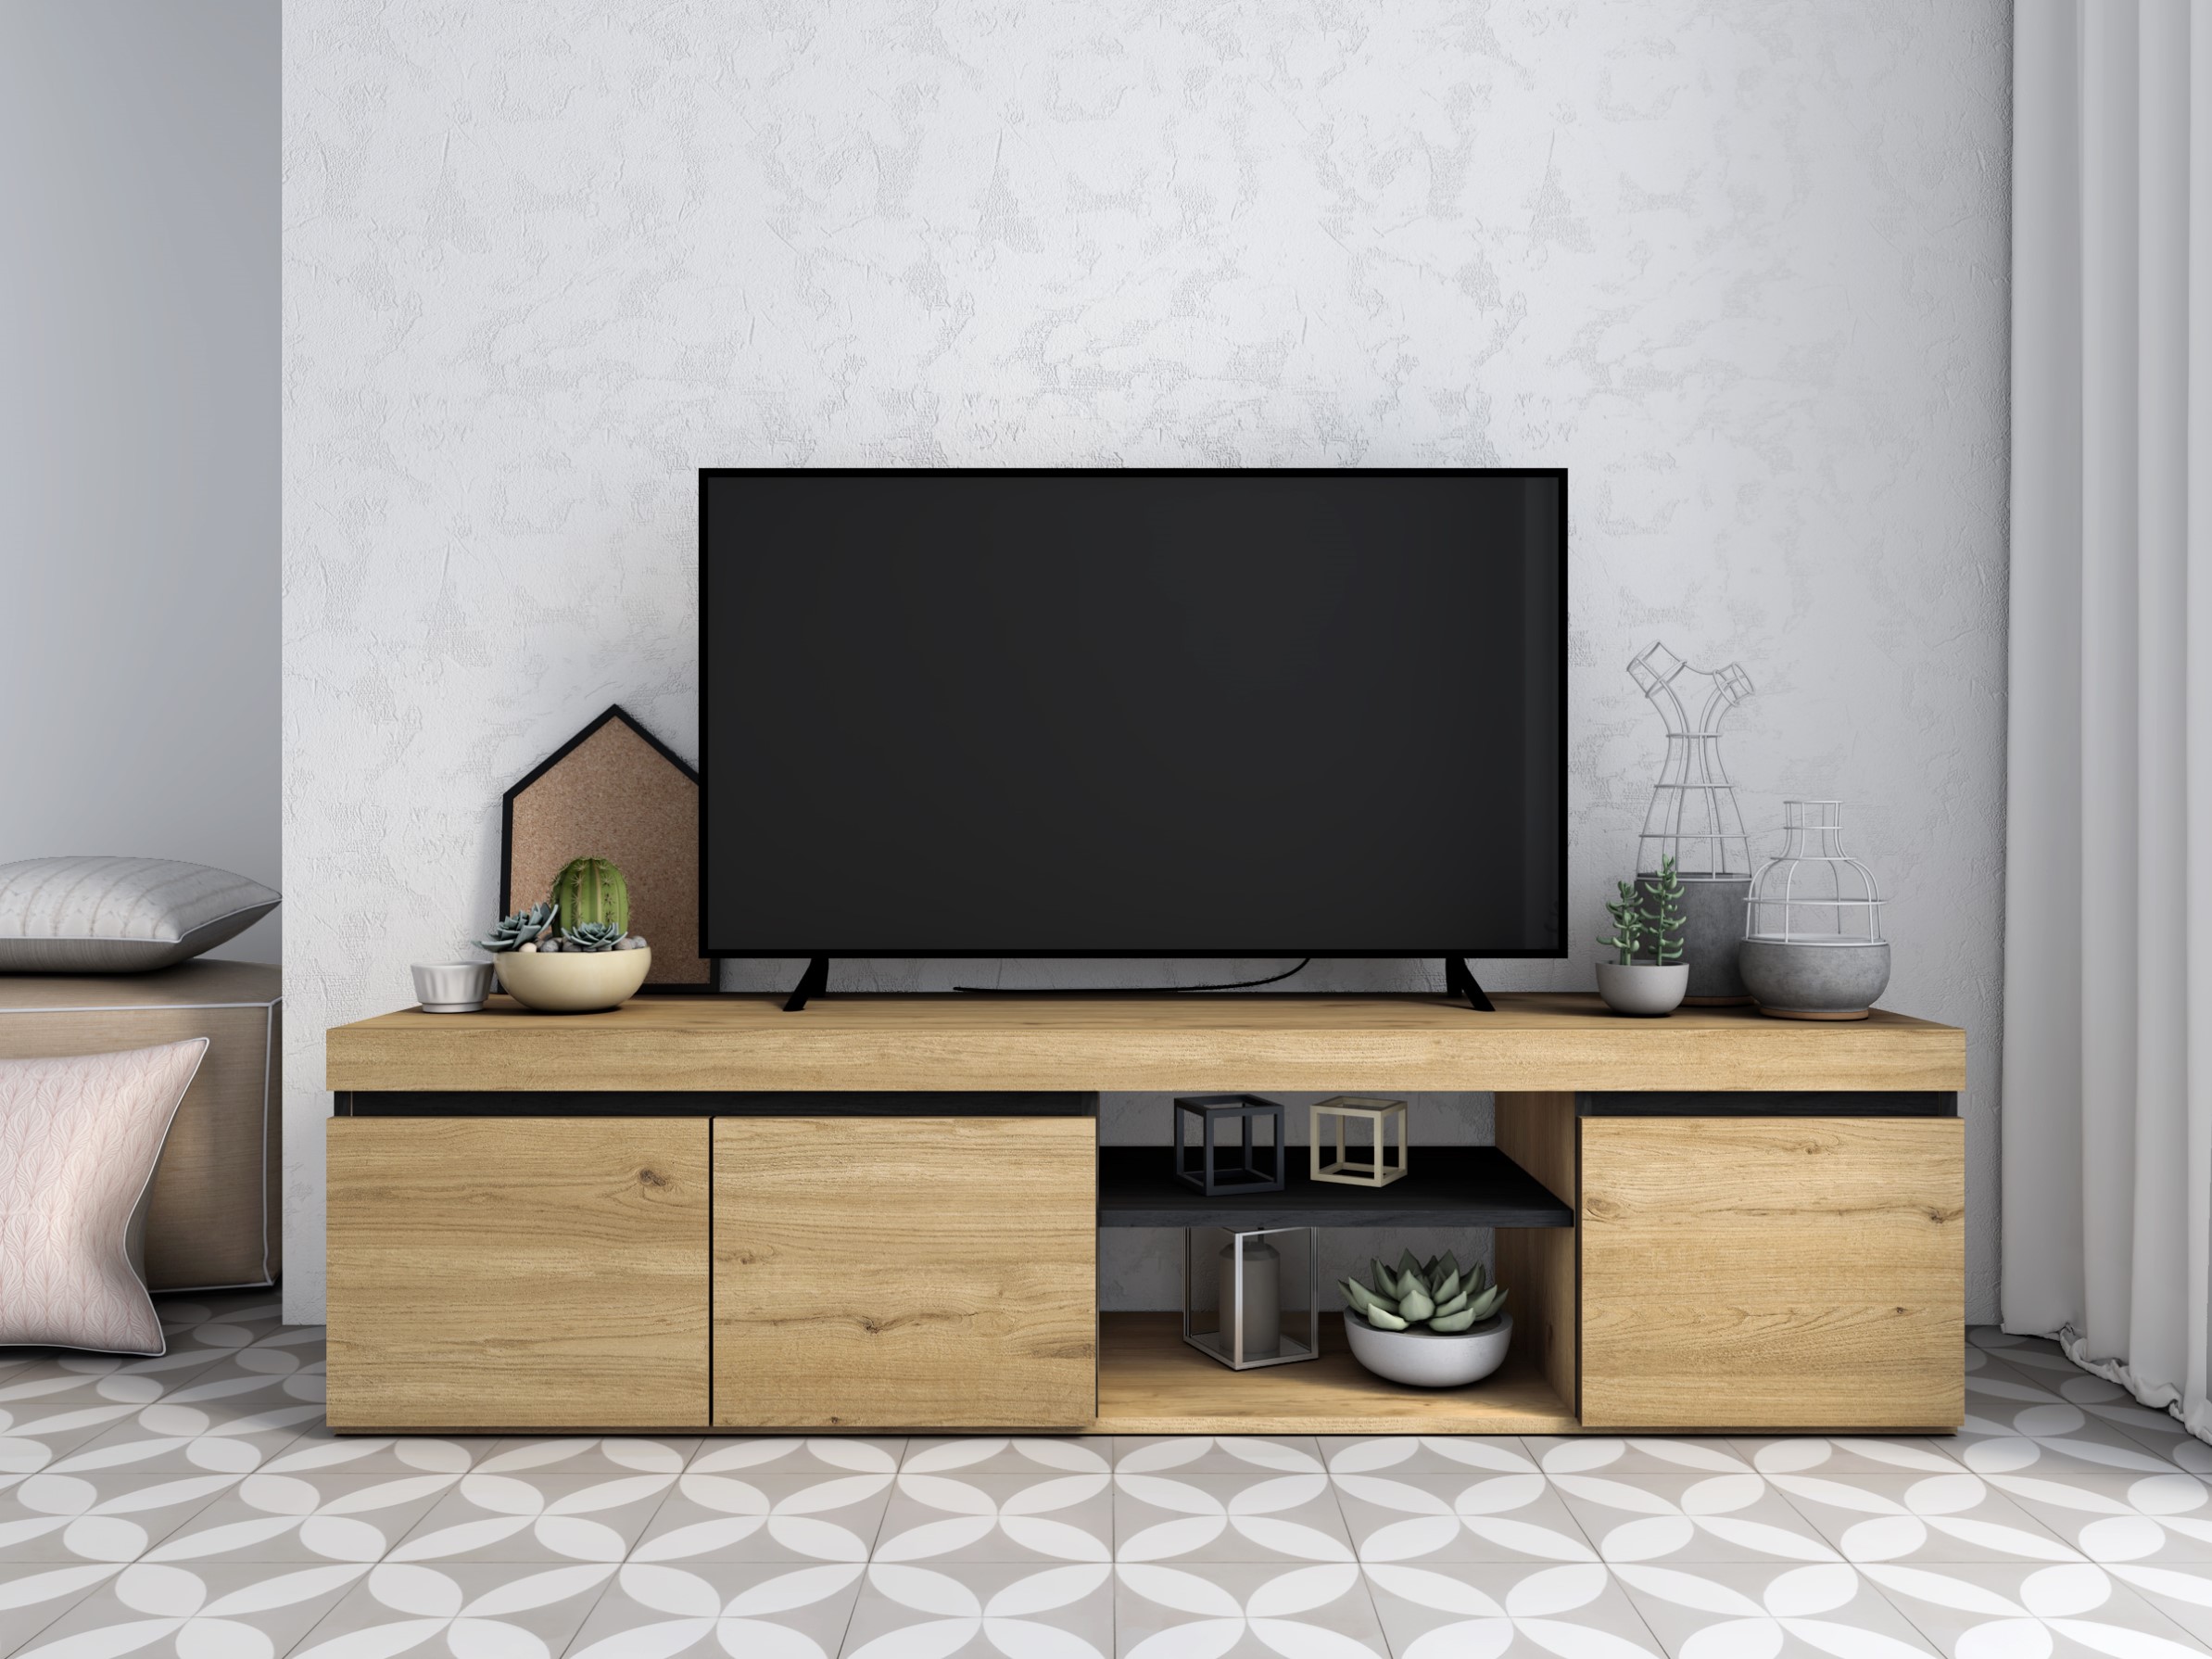 Mueble TV ajustable para salón, 160 x 40 x 38 cm, color roble y antracita